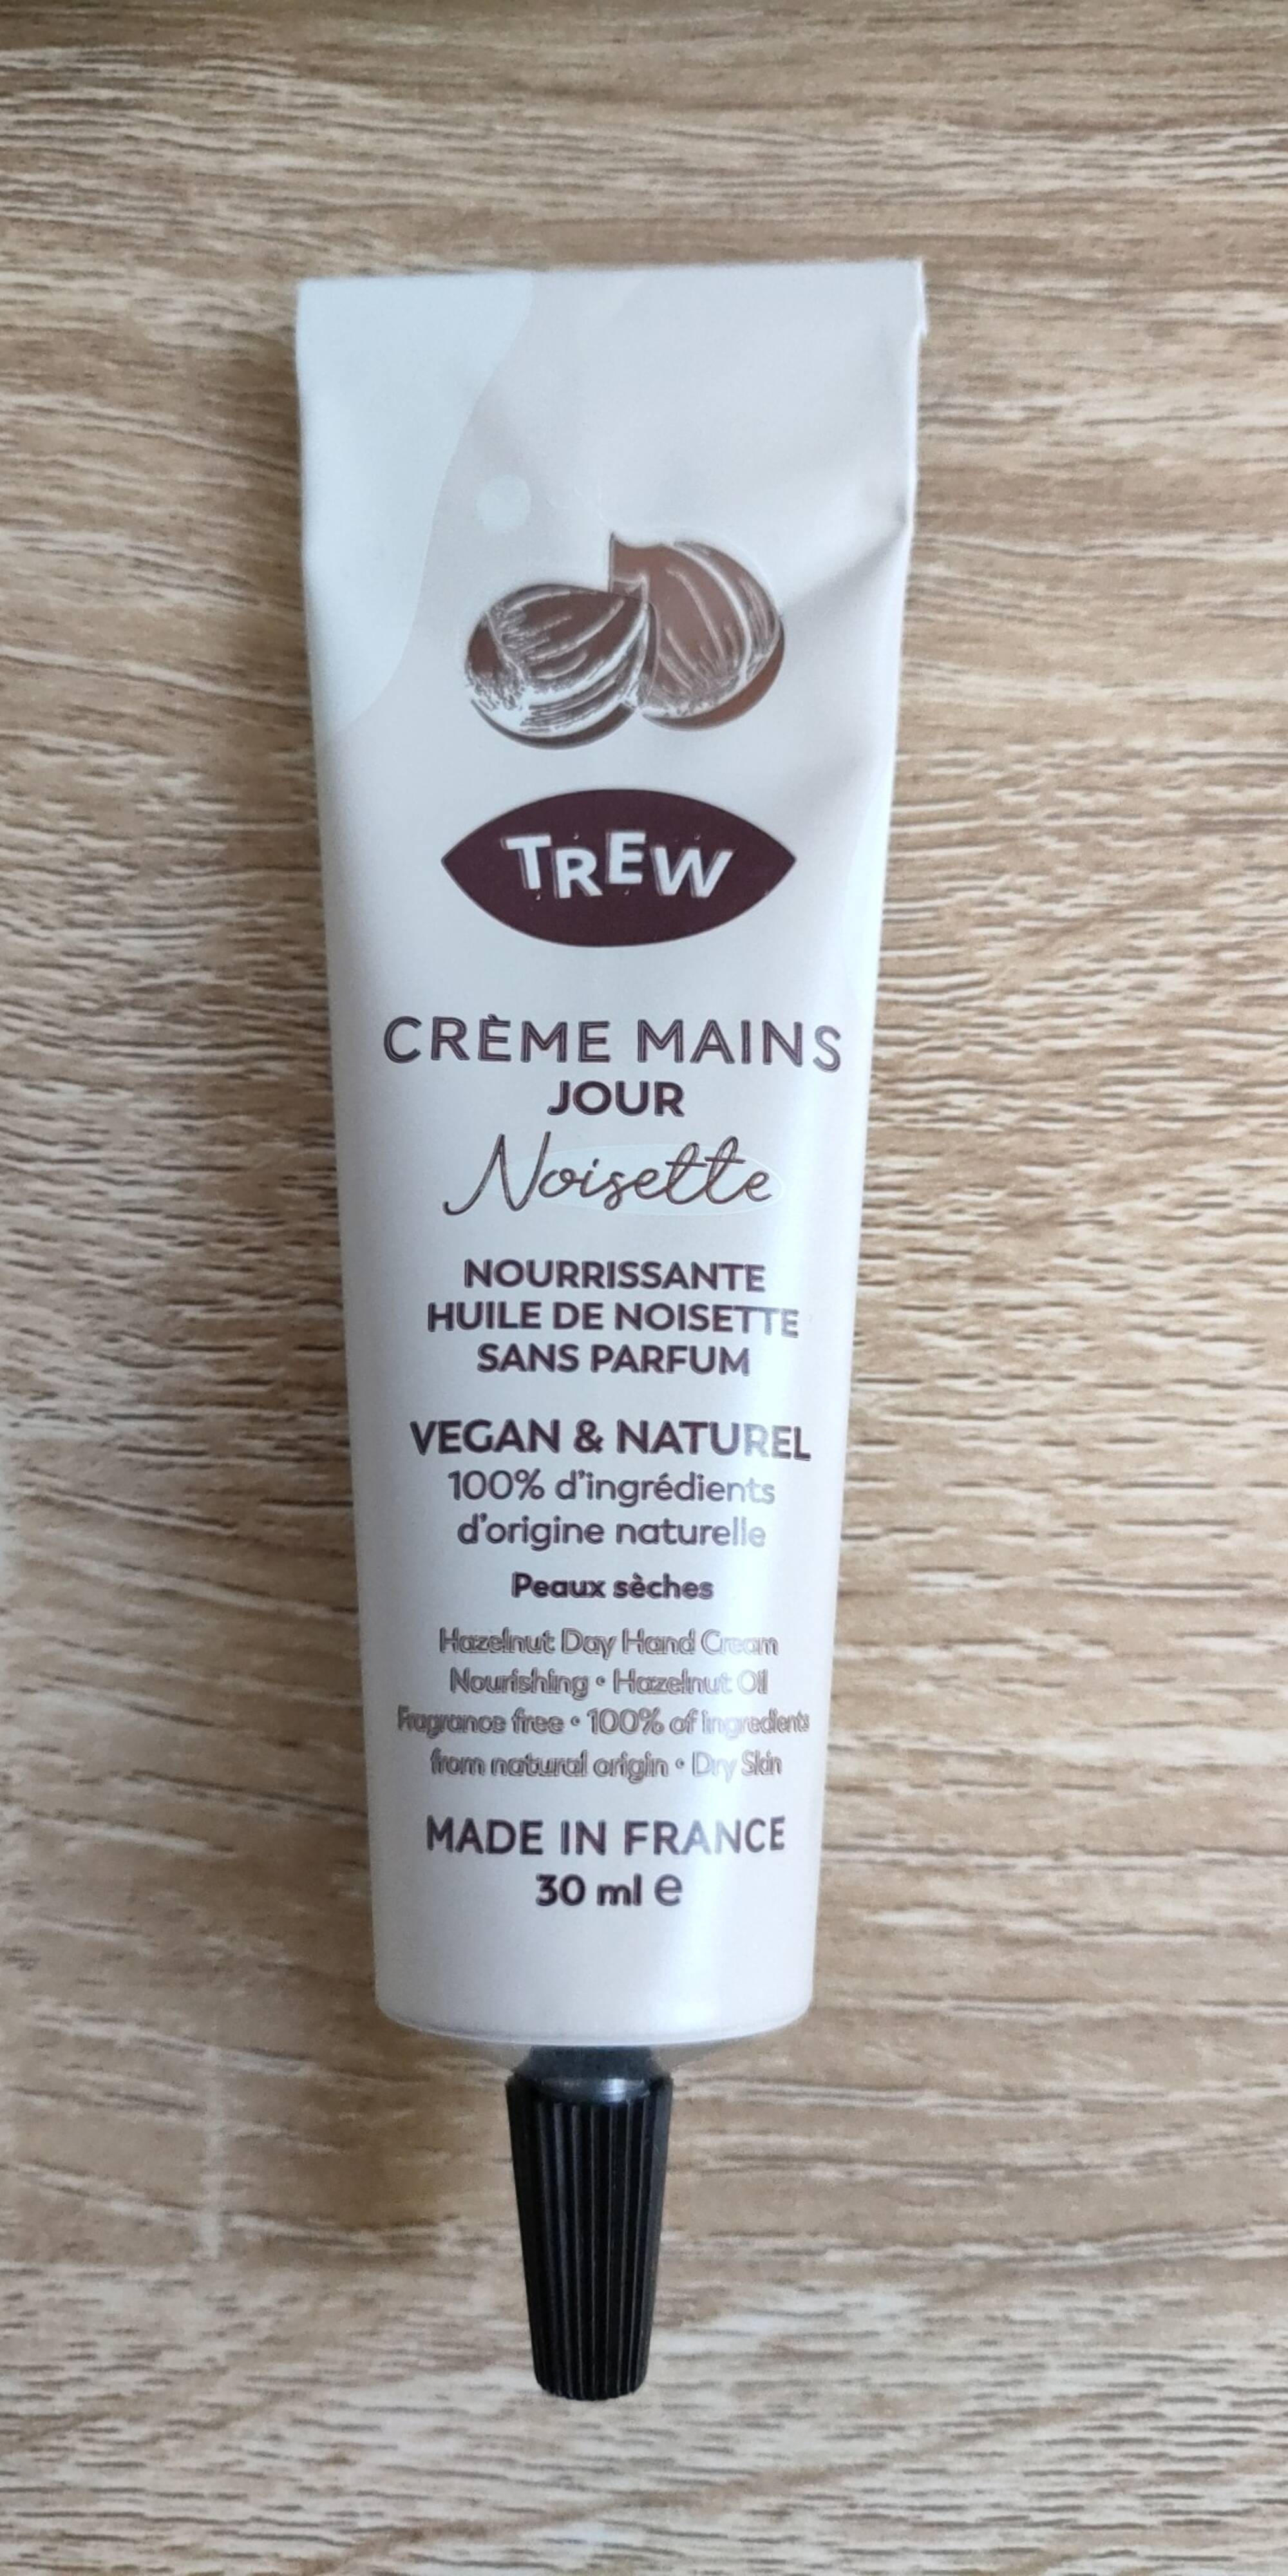 TREW - Crème mains jour à la noisette